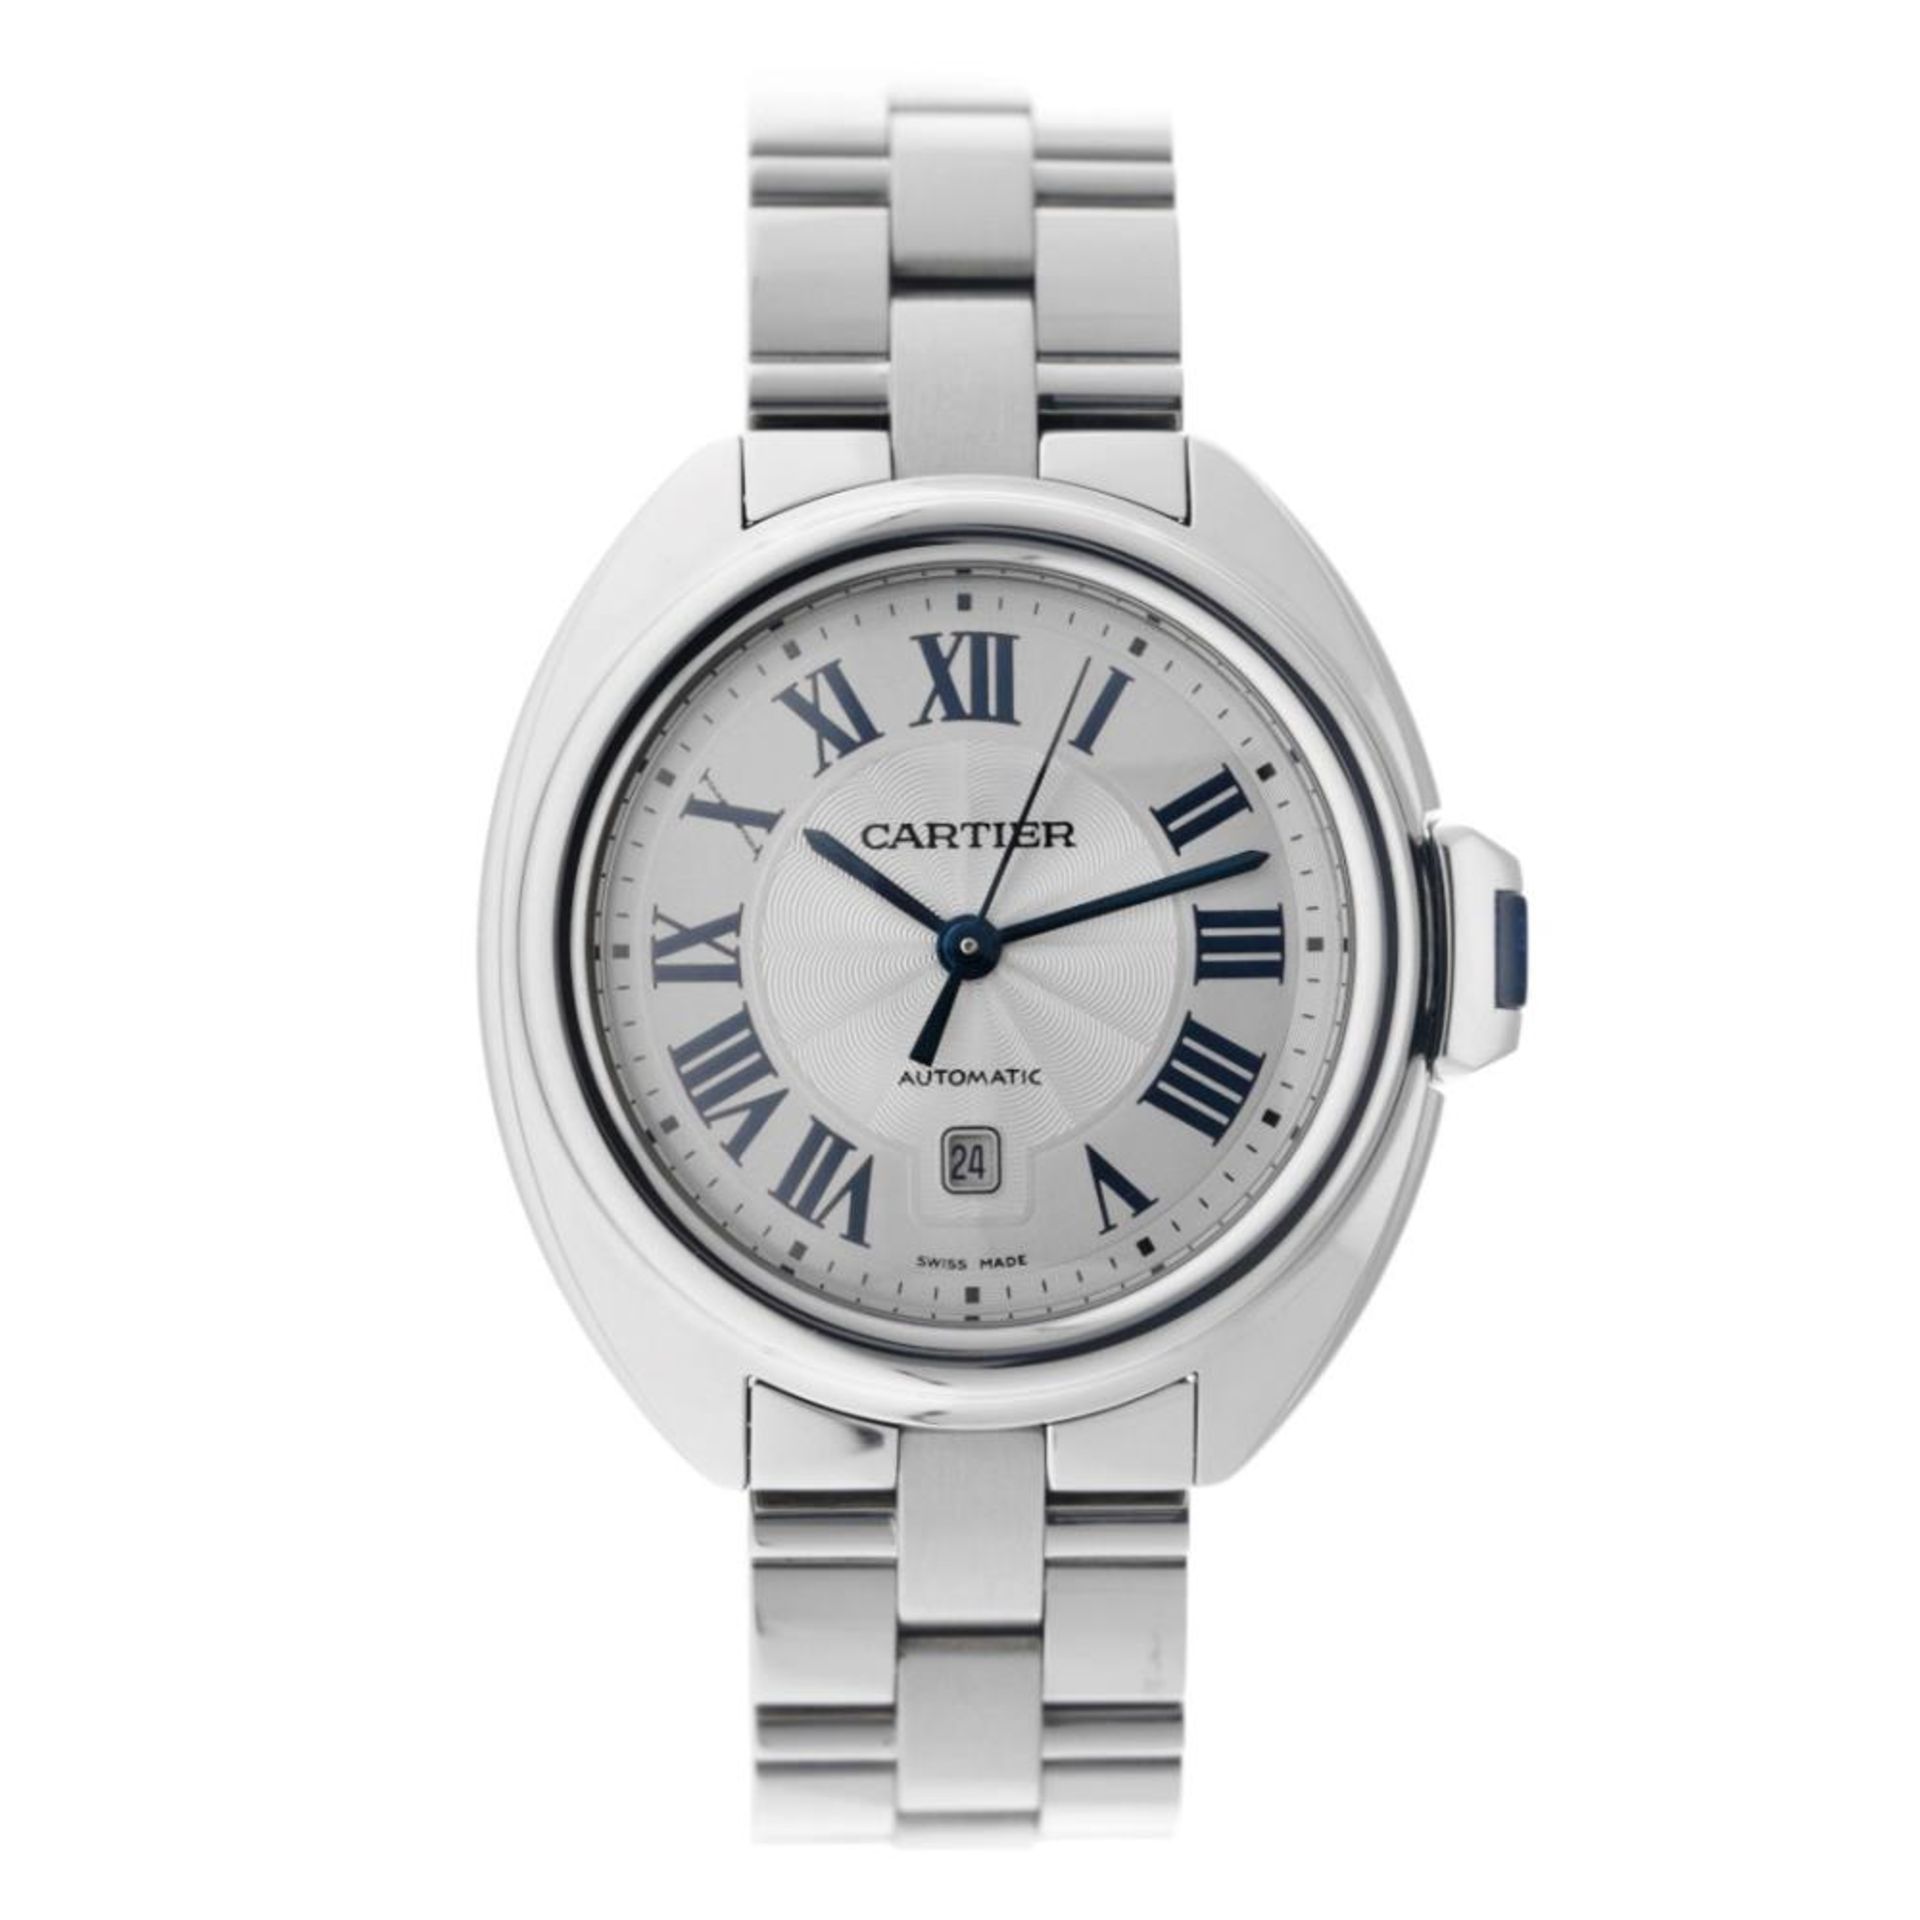 Cartier Clé WSCL0005 - Men's watch - 2020. - Image 2 of 12